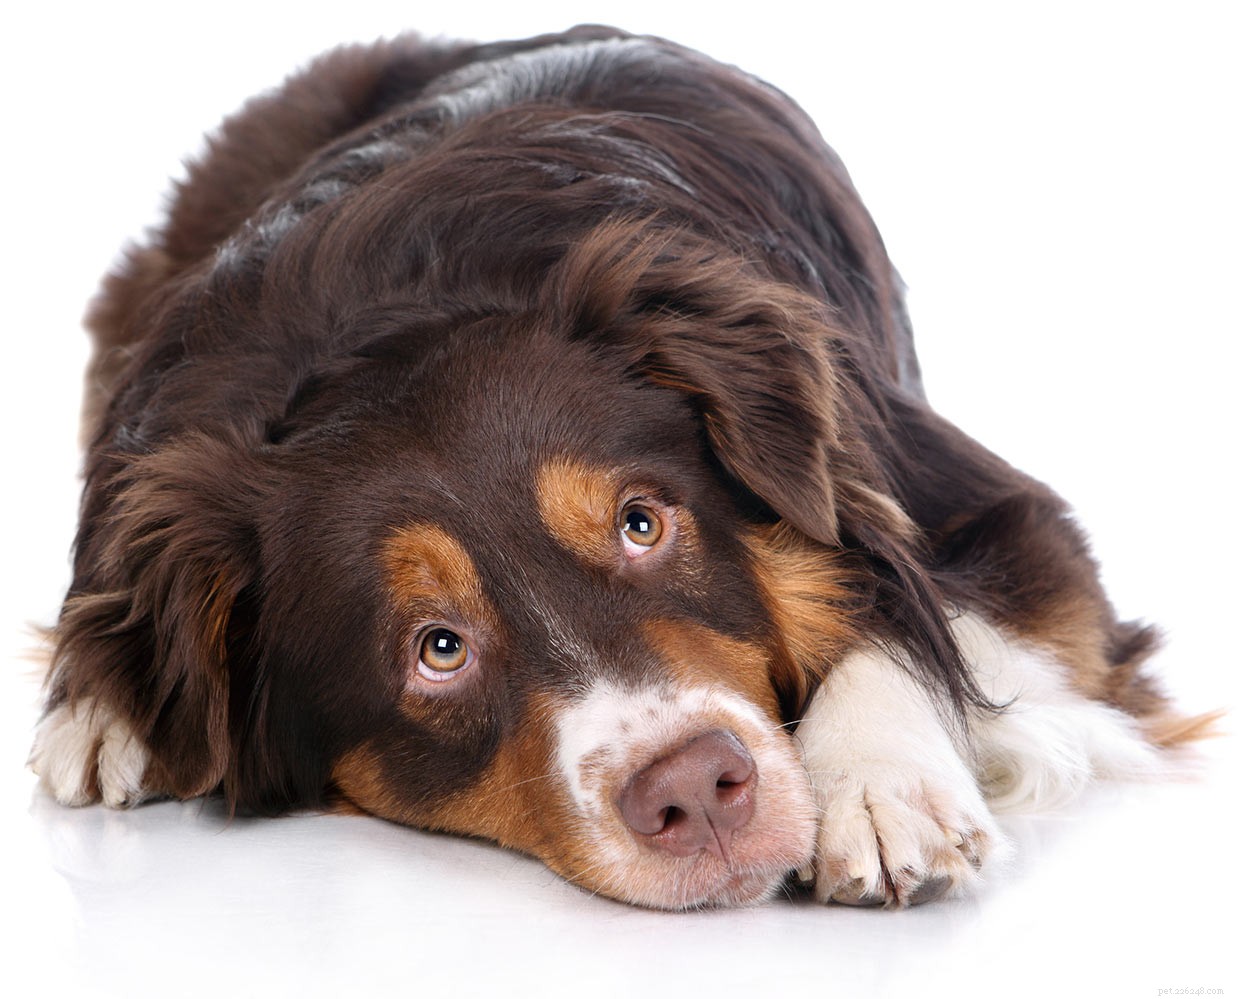 Väteperoxid för hundar – vad kan jag använda det till på ett säkert sätt?